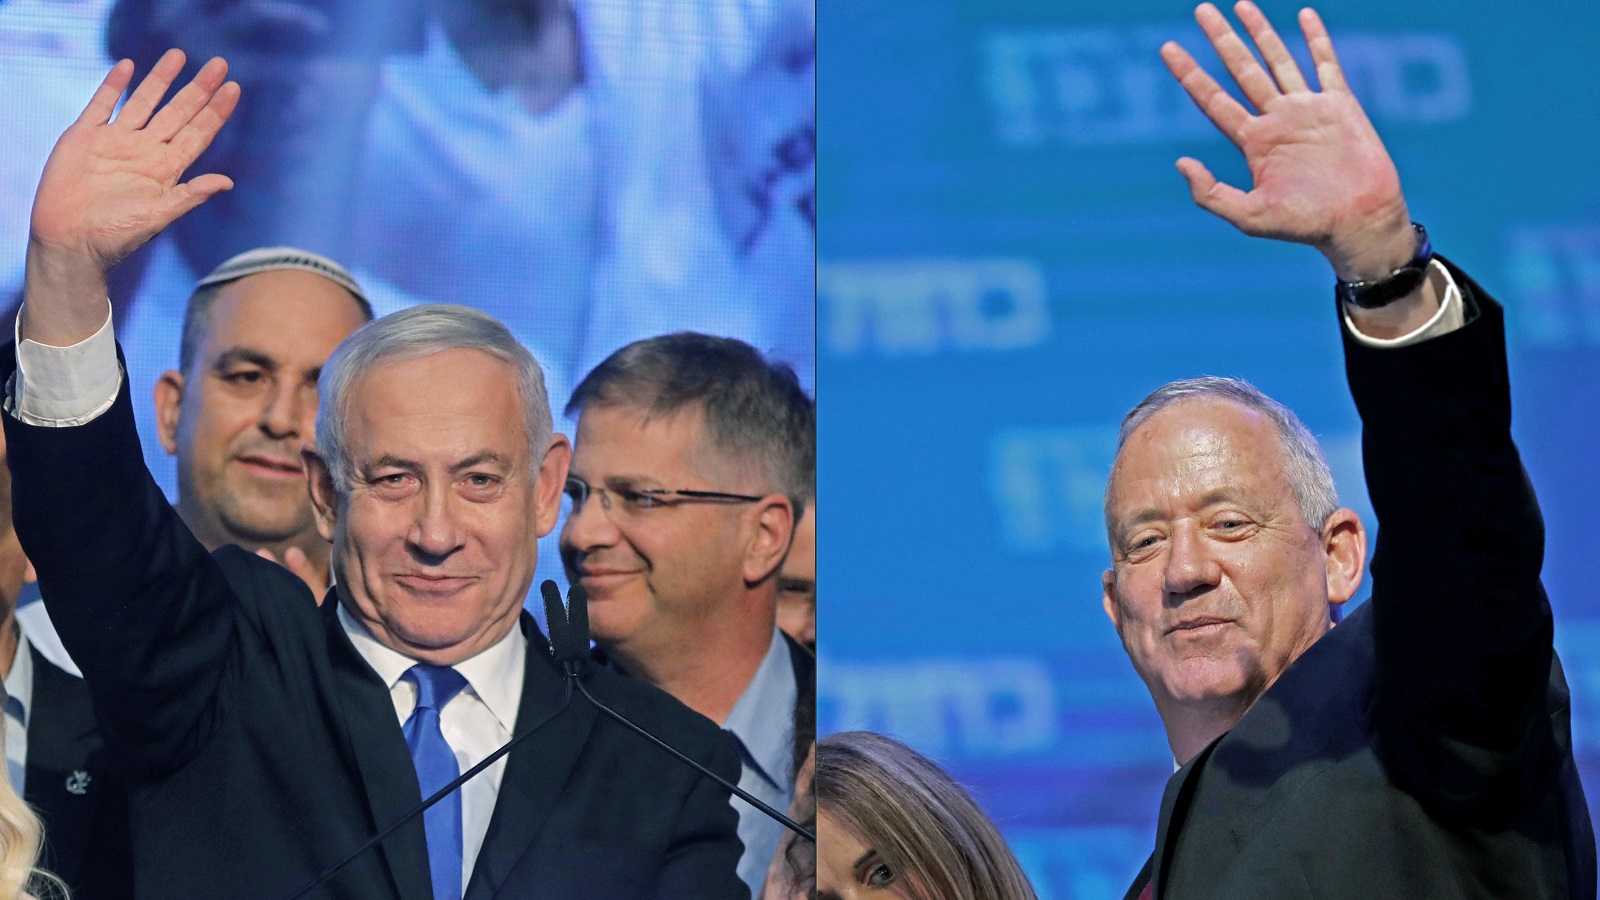 صفقة القرن:واشنطن تدرس نشرها قبل الانتخابات الاسرائيلية